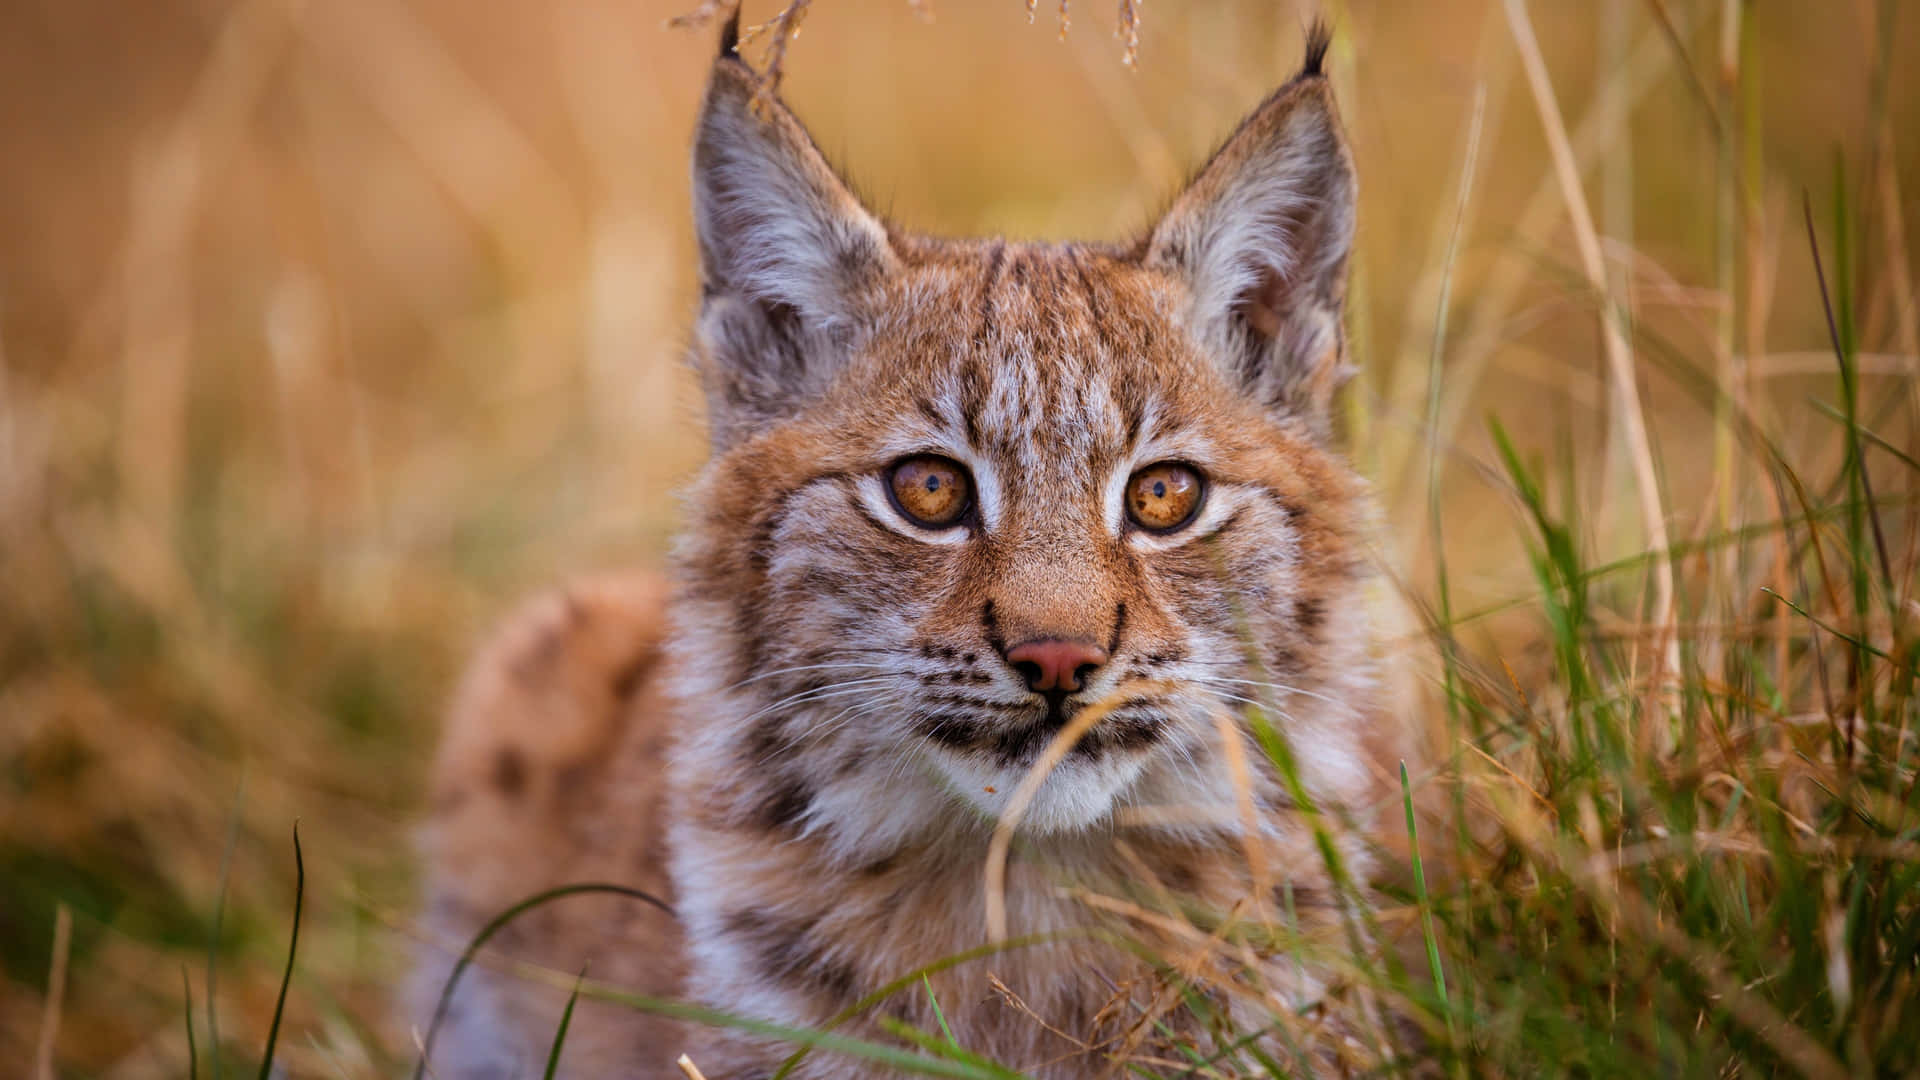 Eurasian Lynxin Grassland Wallpaper